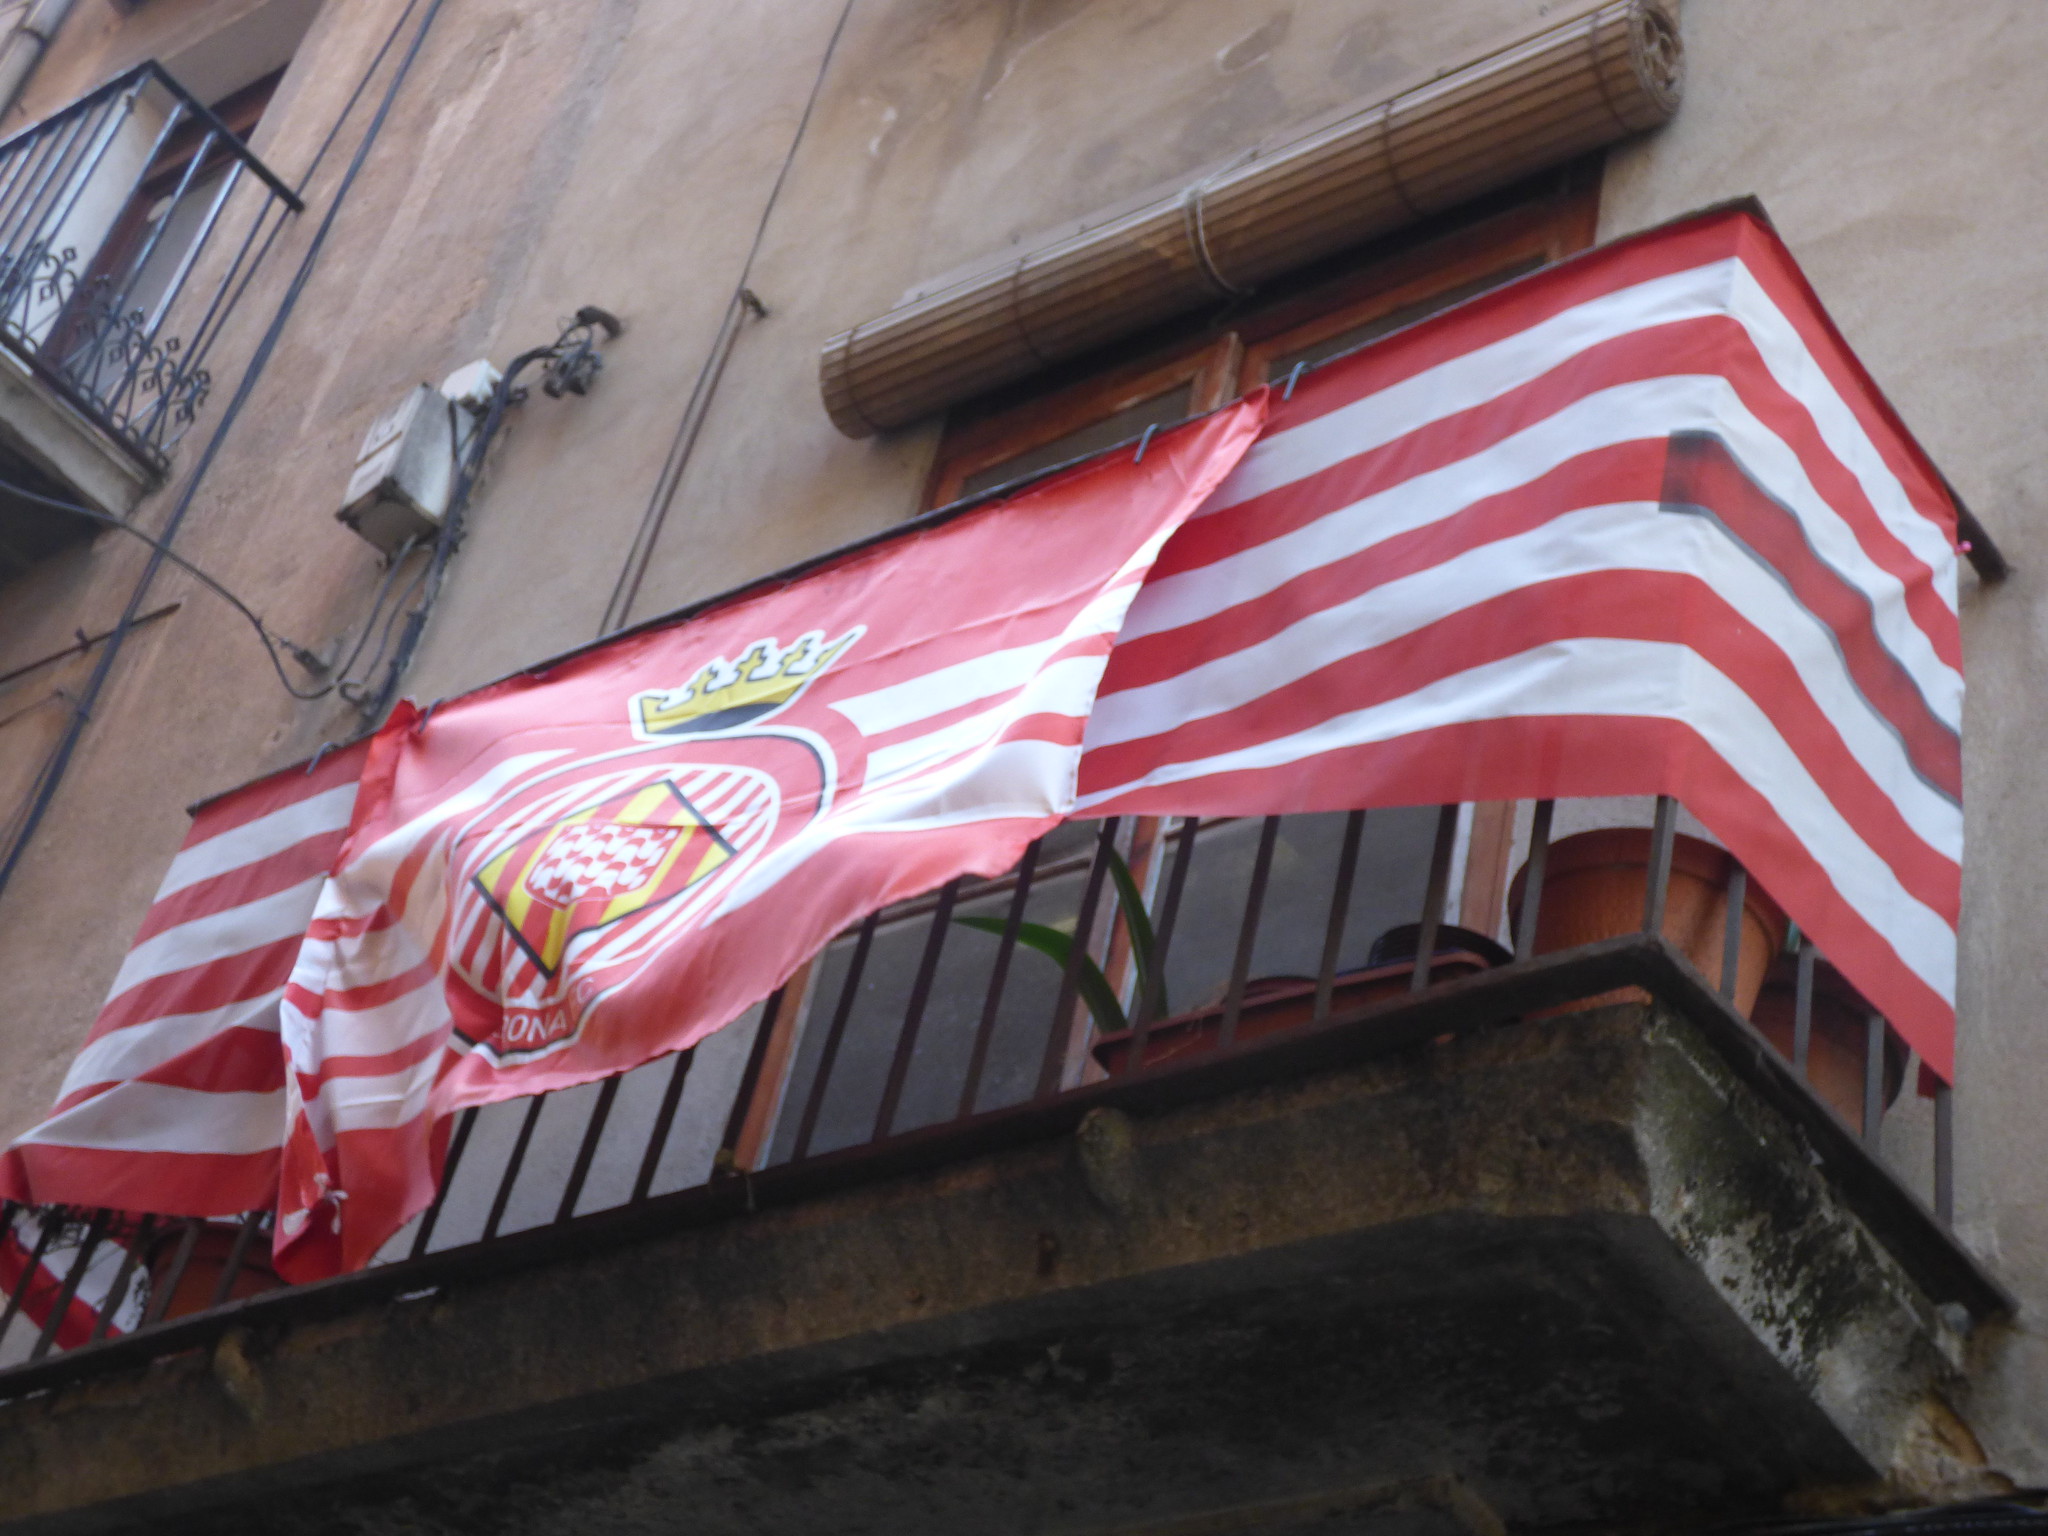 How Girona became the unlikeliest challenger in La Liga